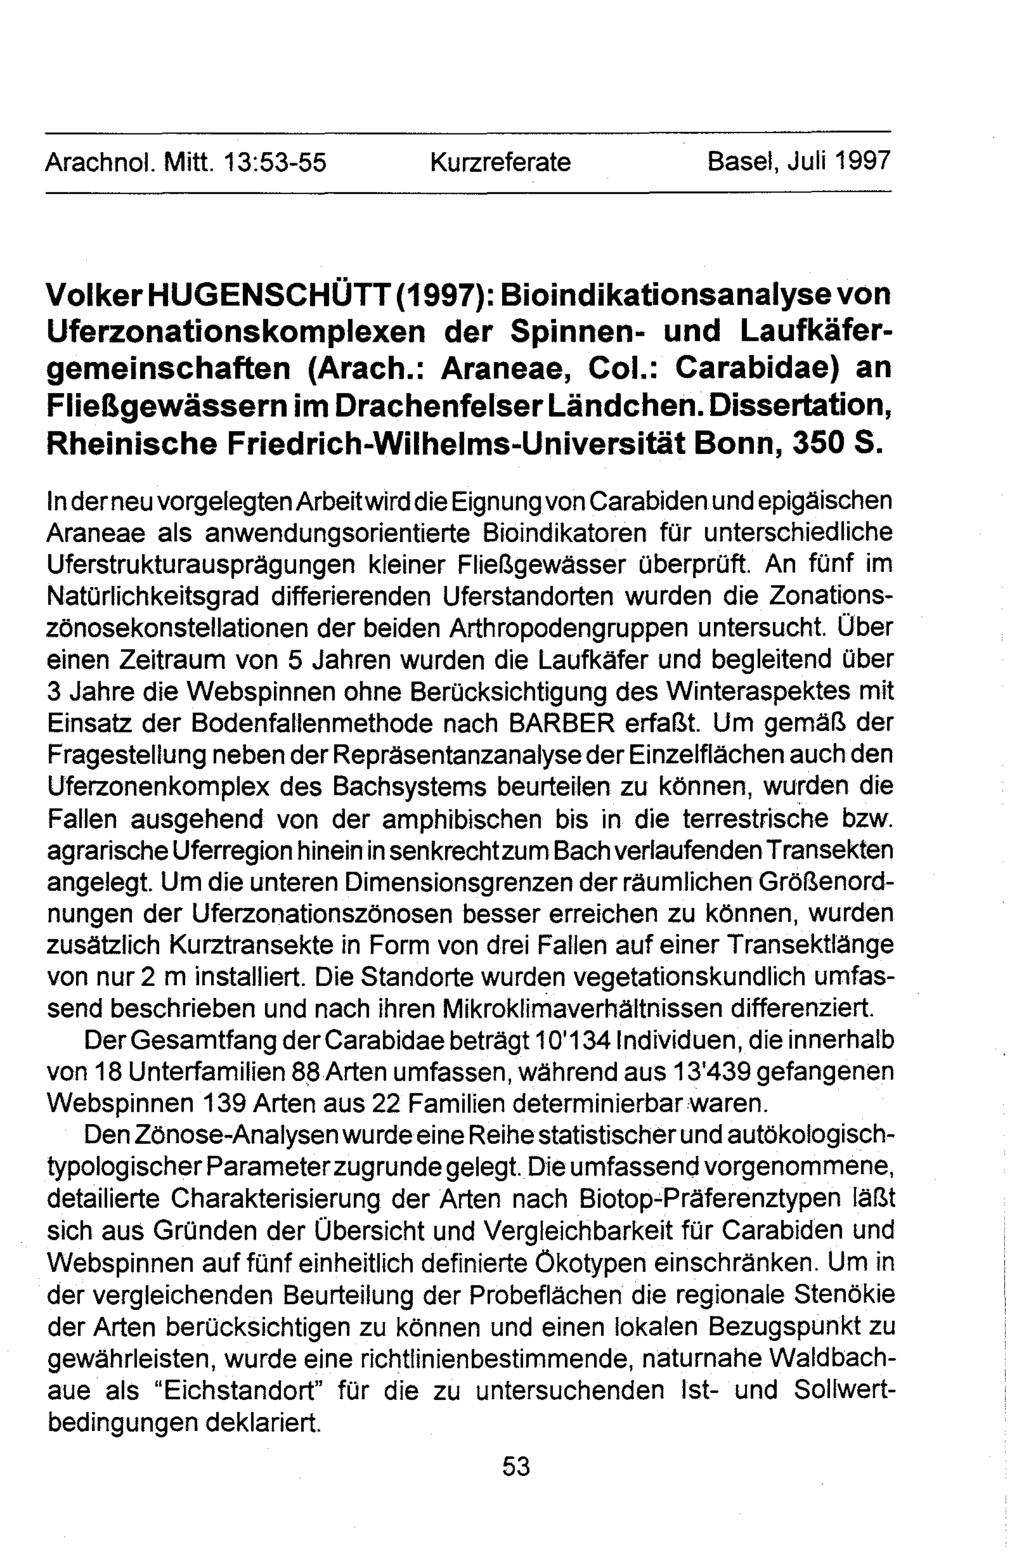 Arachnol. Mitt. 13:53-55 Kurzreferate Basel, Juli 1997 Volker HUGENSCHOTT (1997): Bioindikationsanalyse von Uferzonationskomplexen der Spinnen- und Laufkafergemeinschaften (Arach.: Araneae, Col.